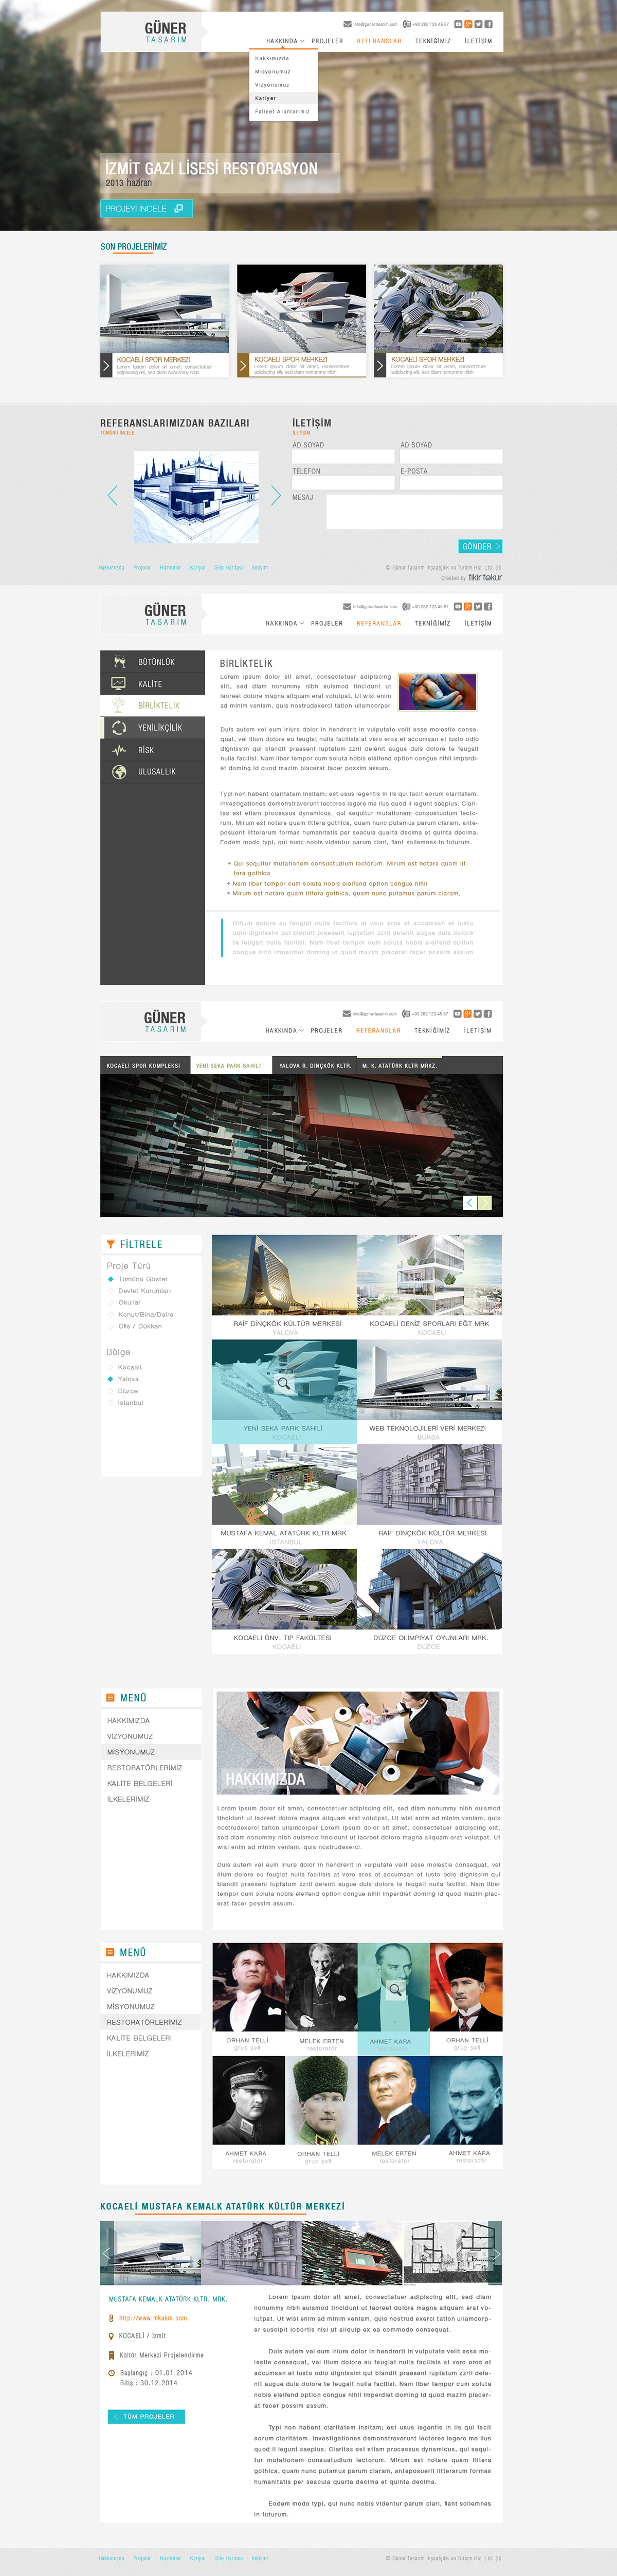 web site güner güner tasarım web site design Design work photoshop design photoshop web site turkish site